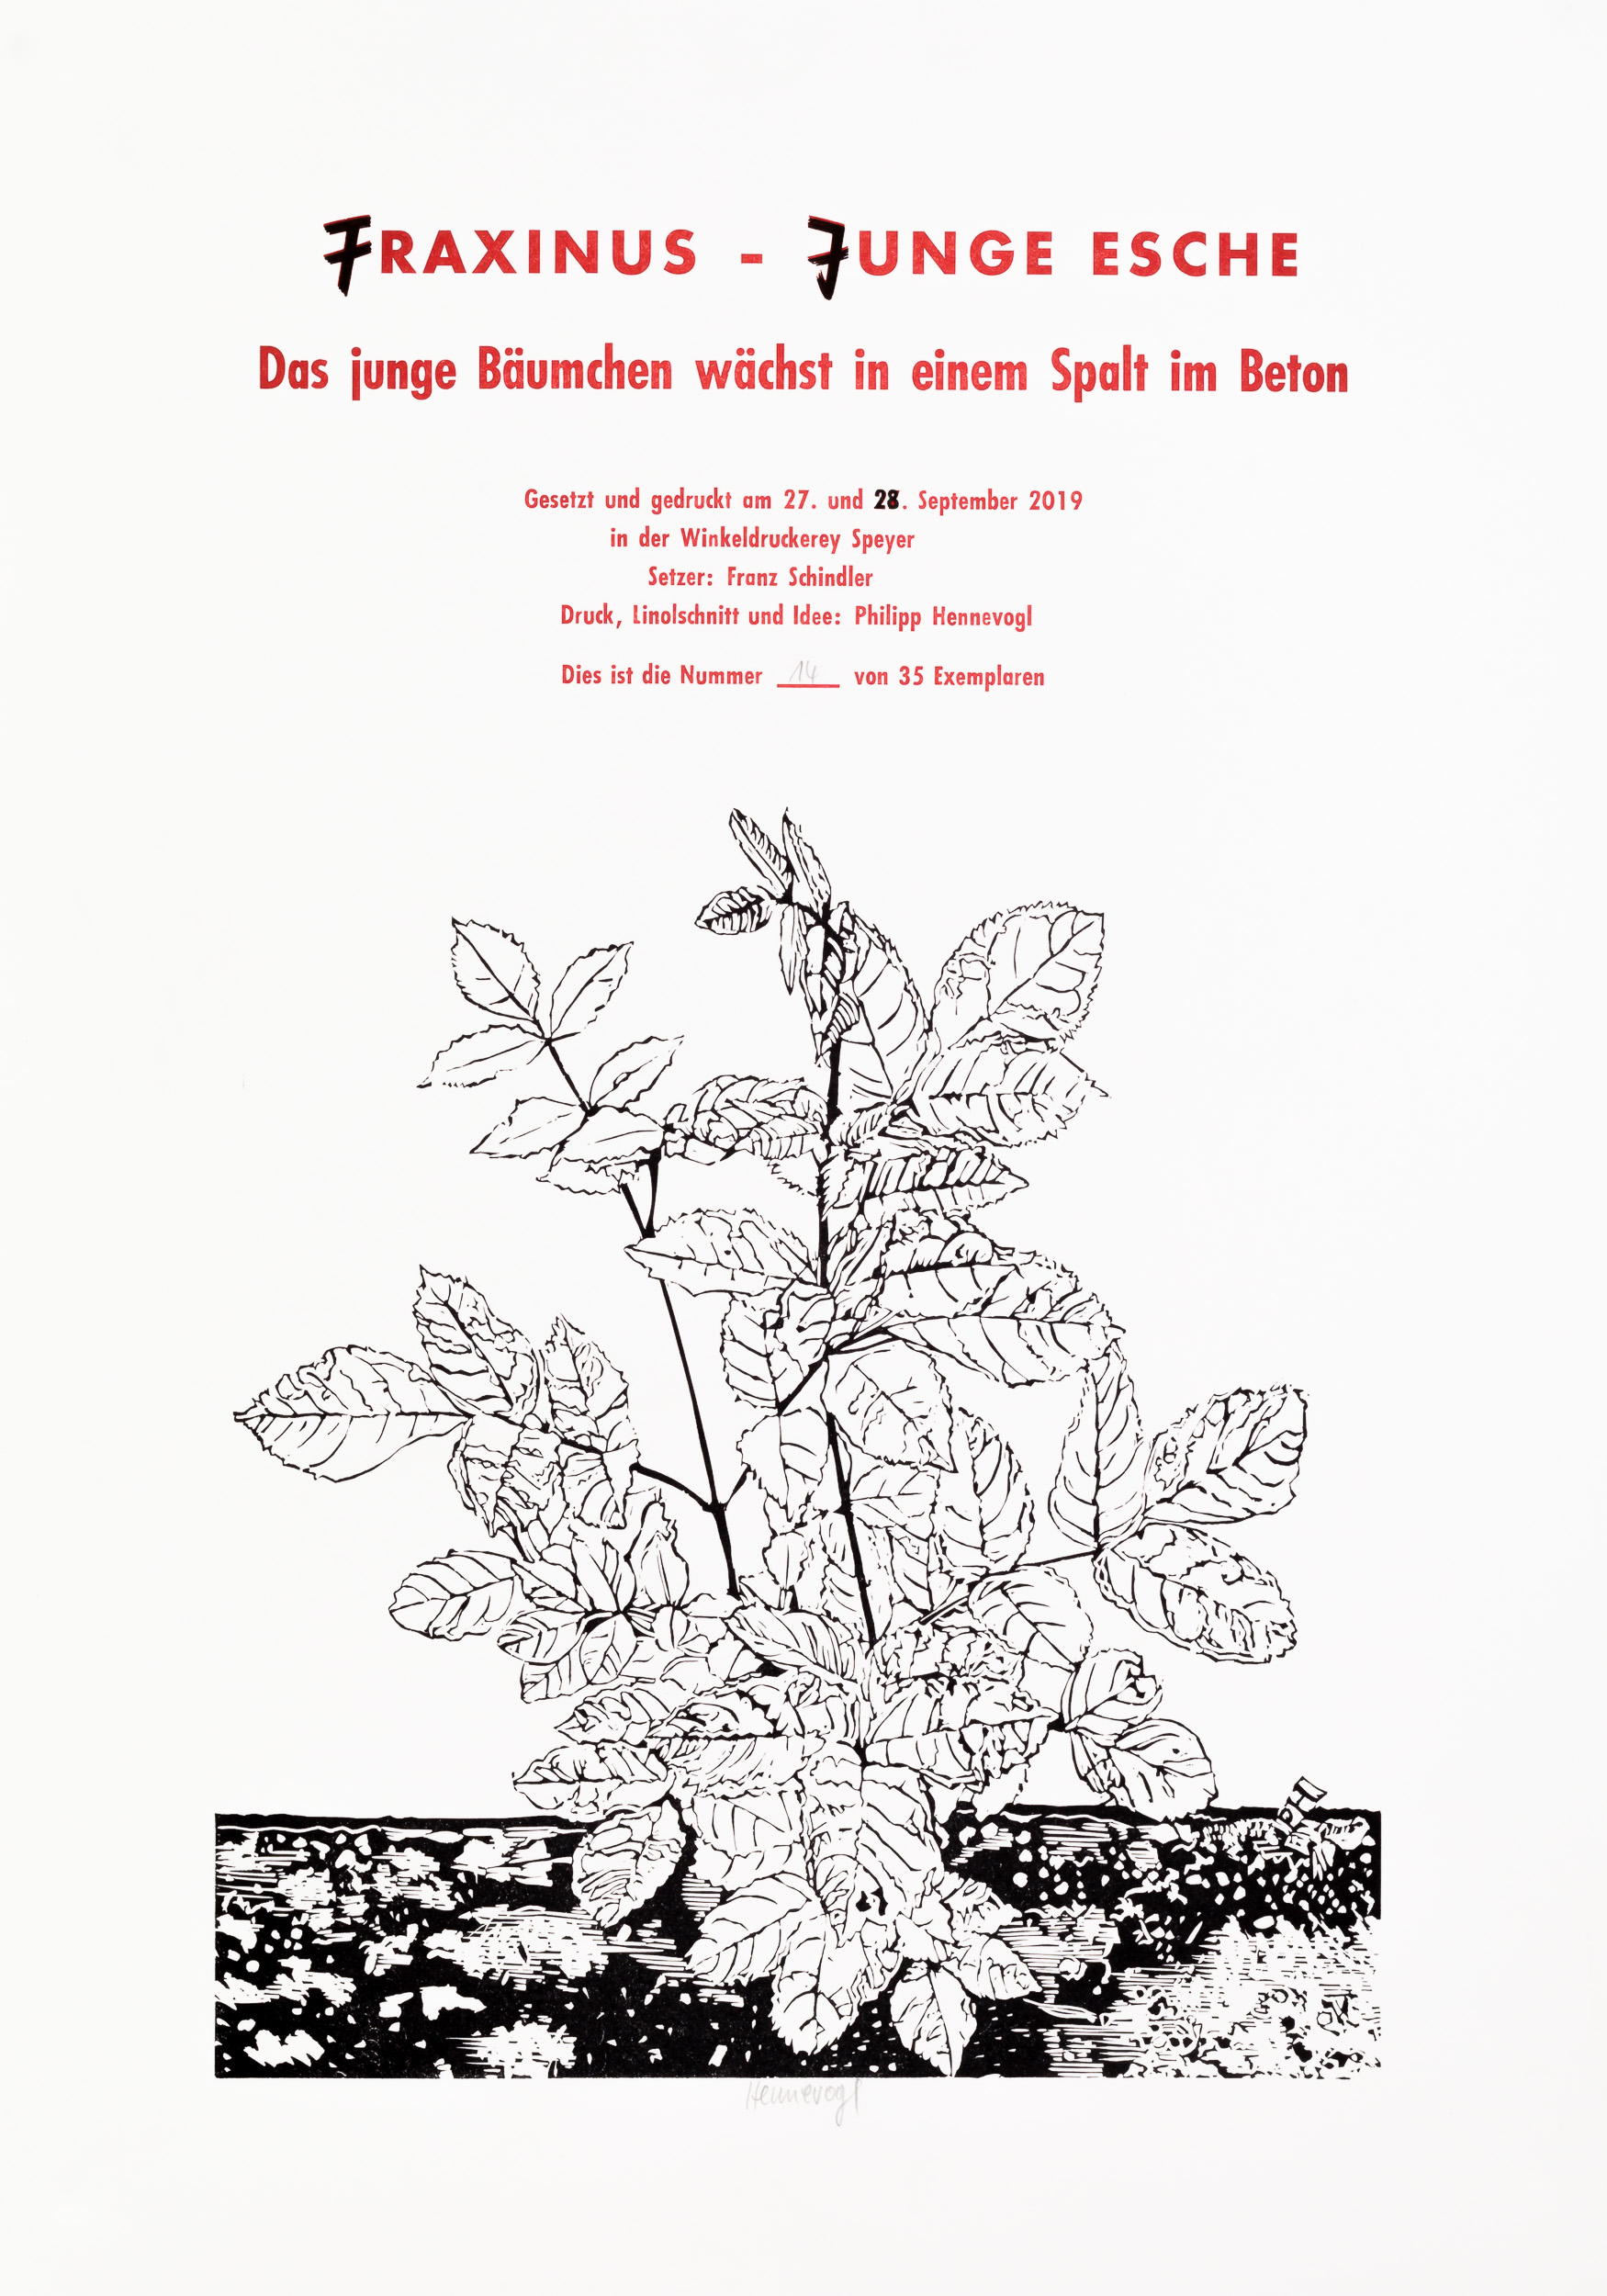 Philipp Hennevogl - Fraxinus, 2019 Linolschnitt und Typografie